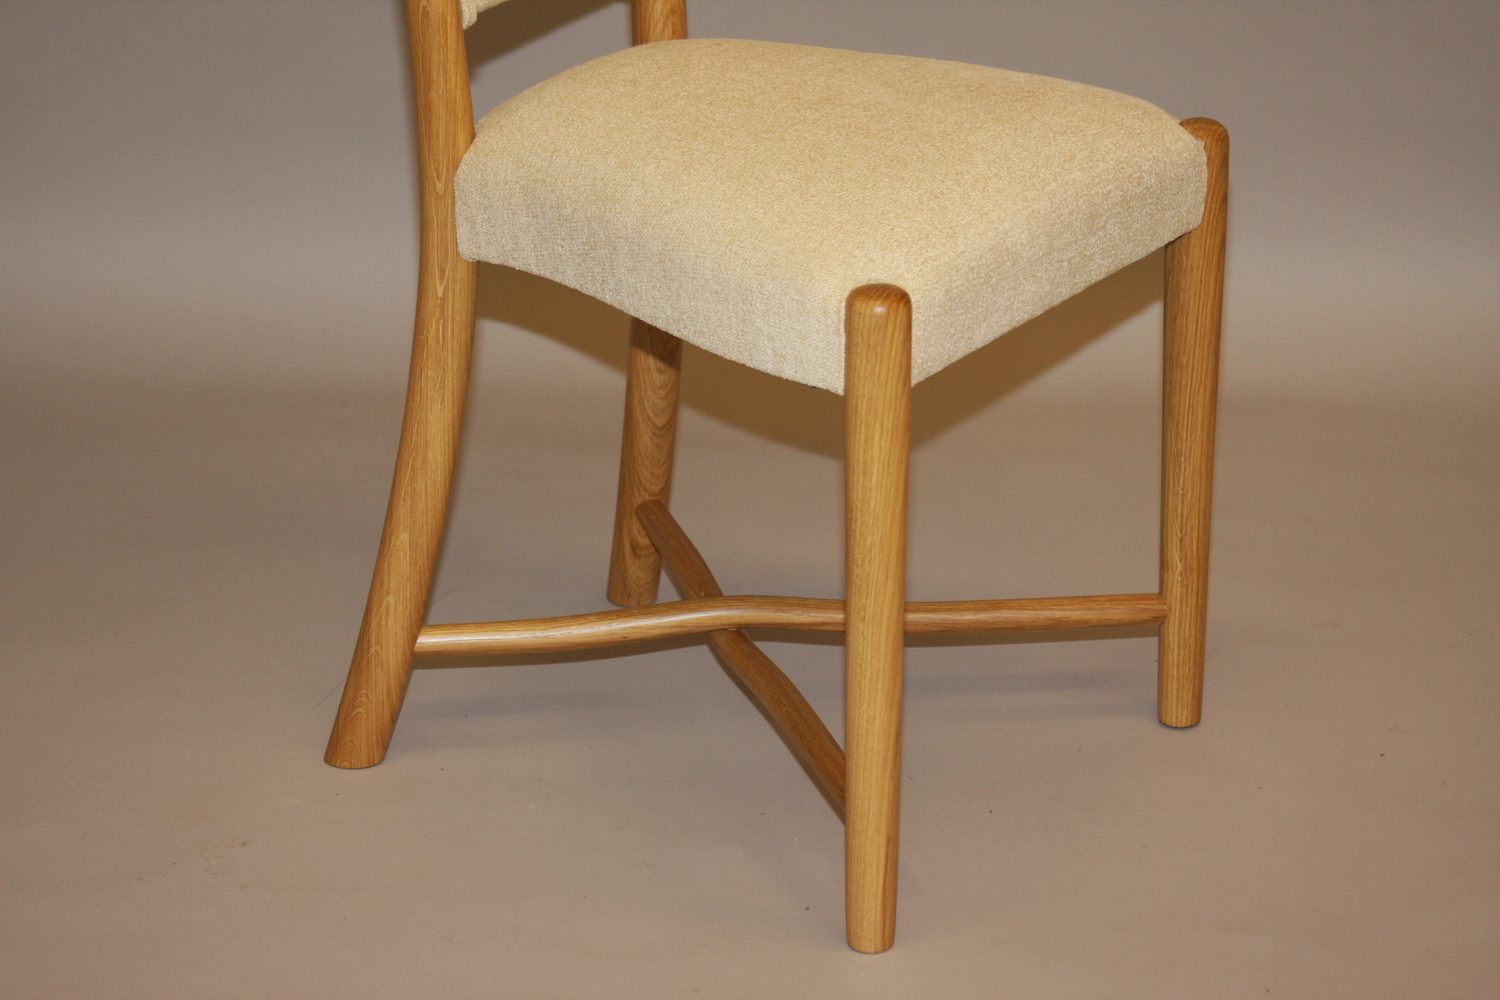 Chair Base Detail